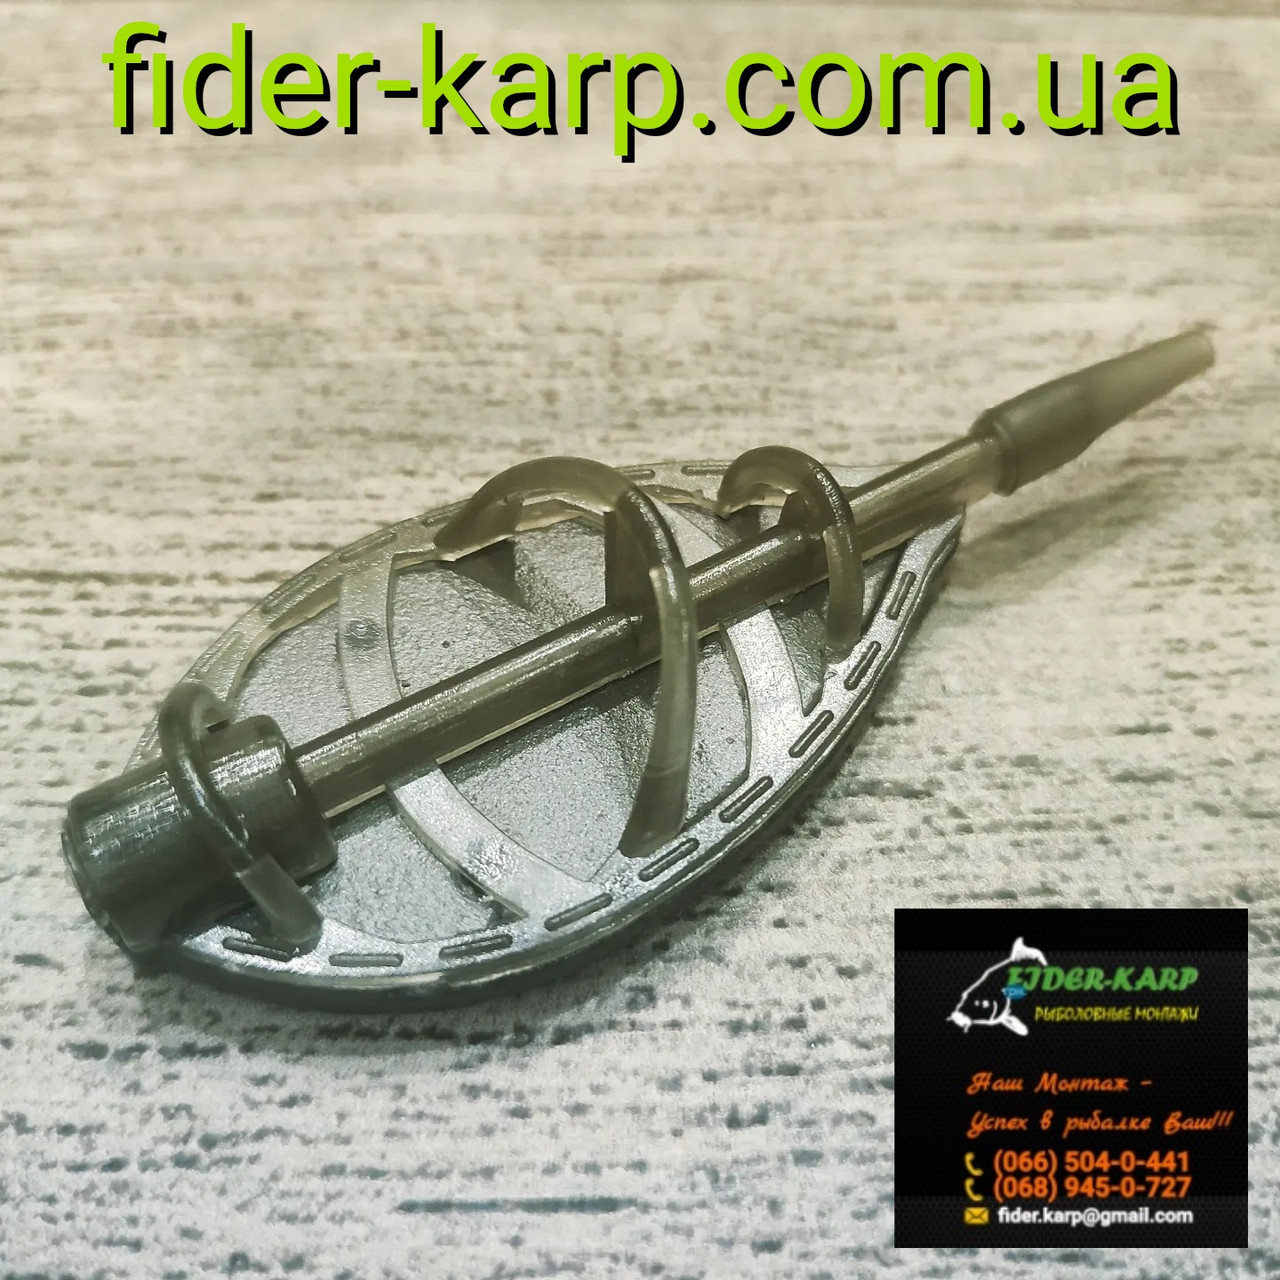 Рибальська годівниця  метод "Flat Feeder XL" (полікарбонат) , вага 30 грамів.